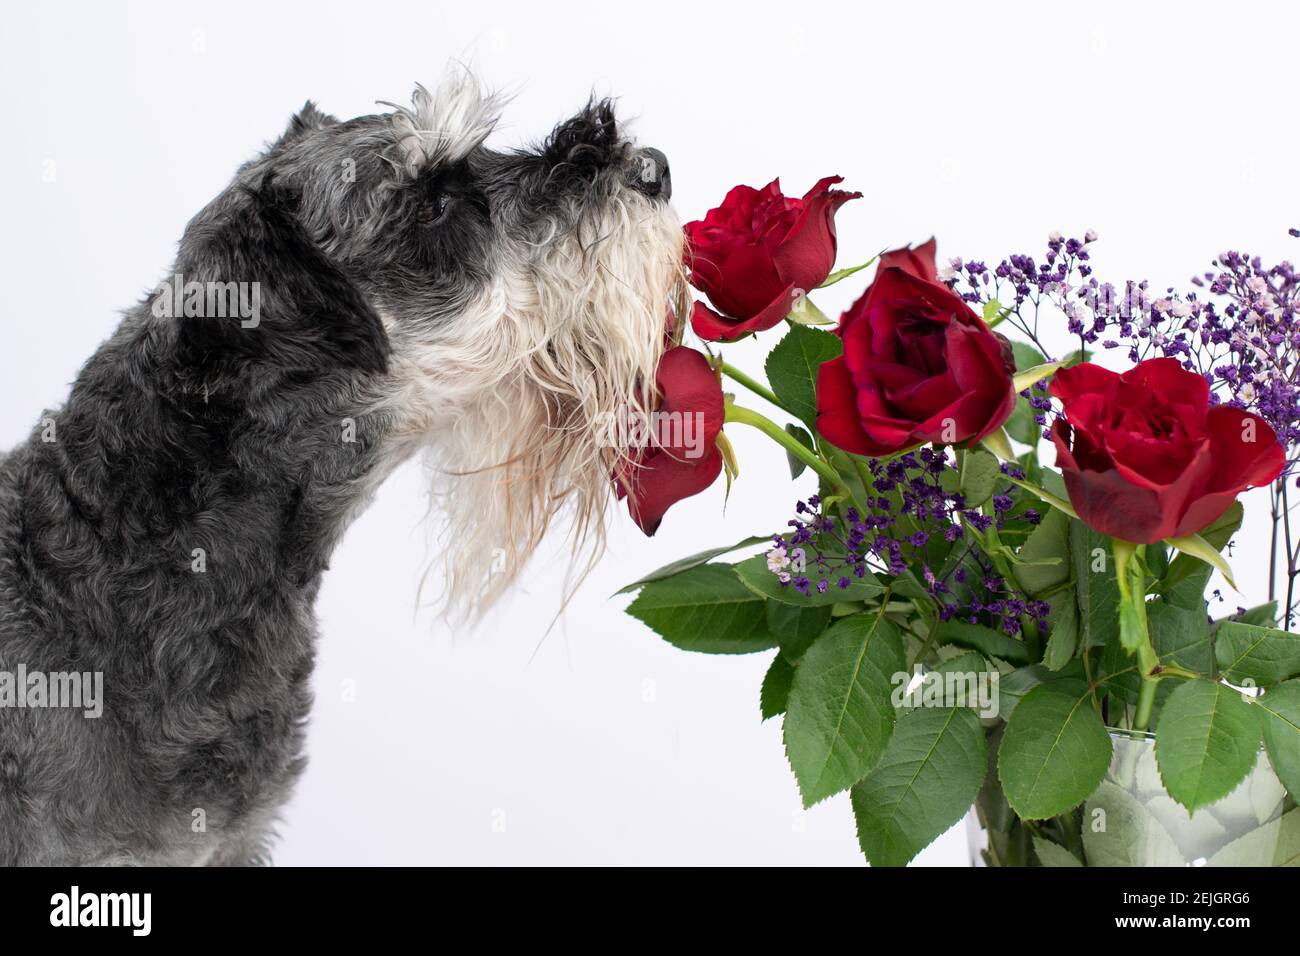 Hund riechende Rose. Geruchssinn-Konzept. Miniatur schnauzer Rasse im Profil auf weißem Hintergrund. Stockfoto